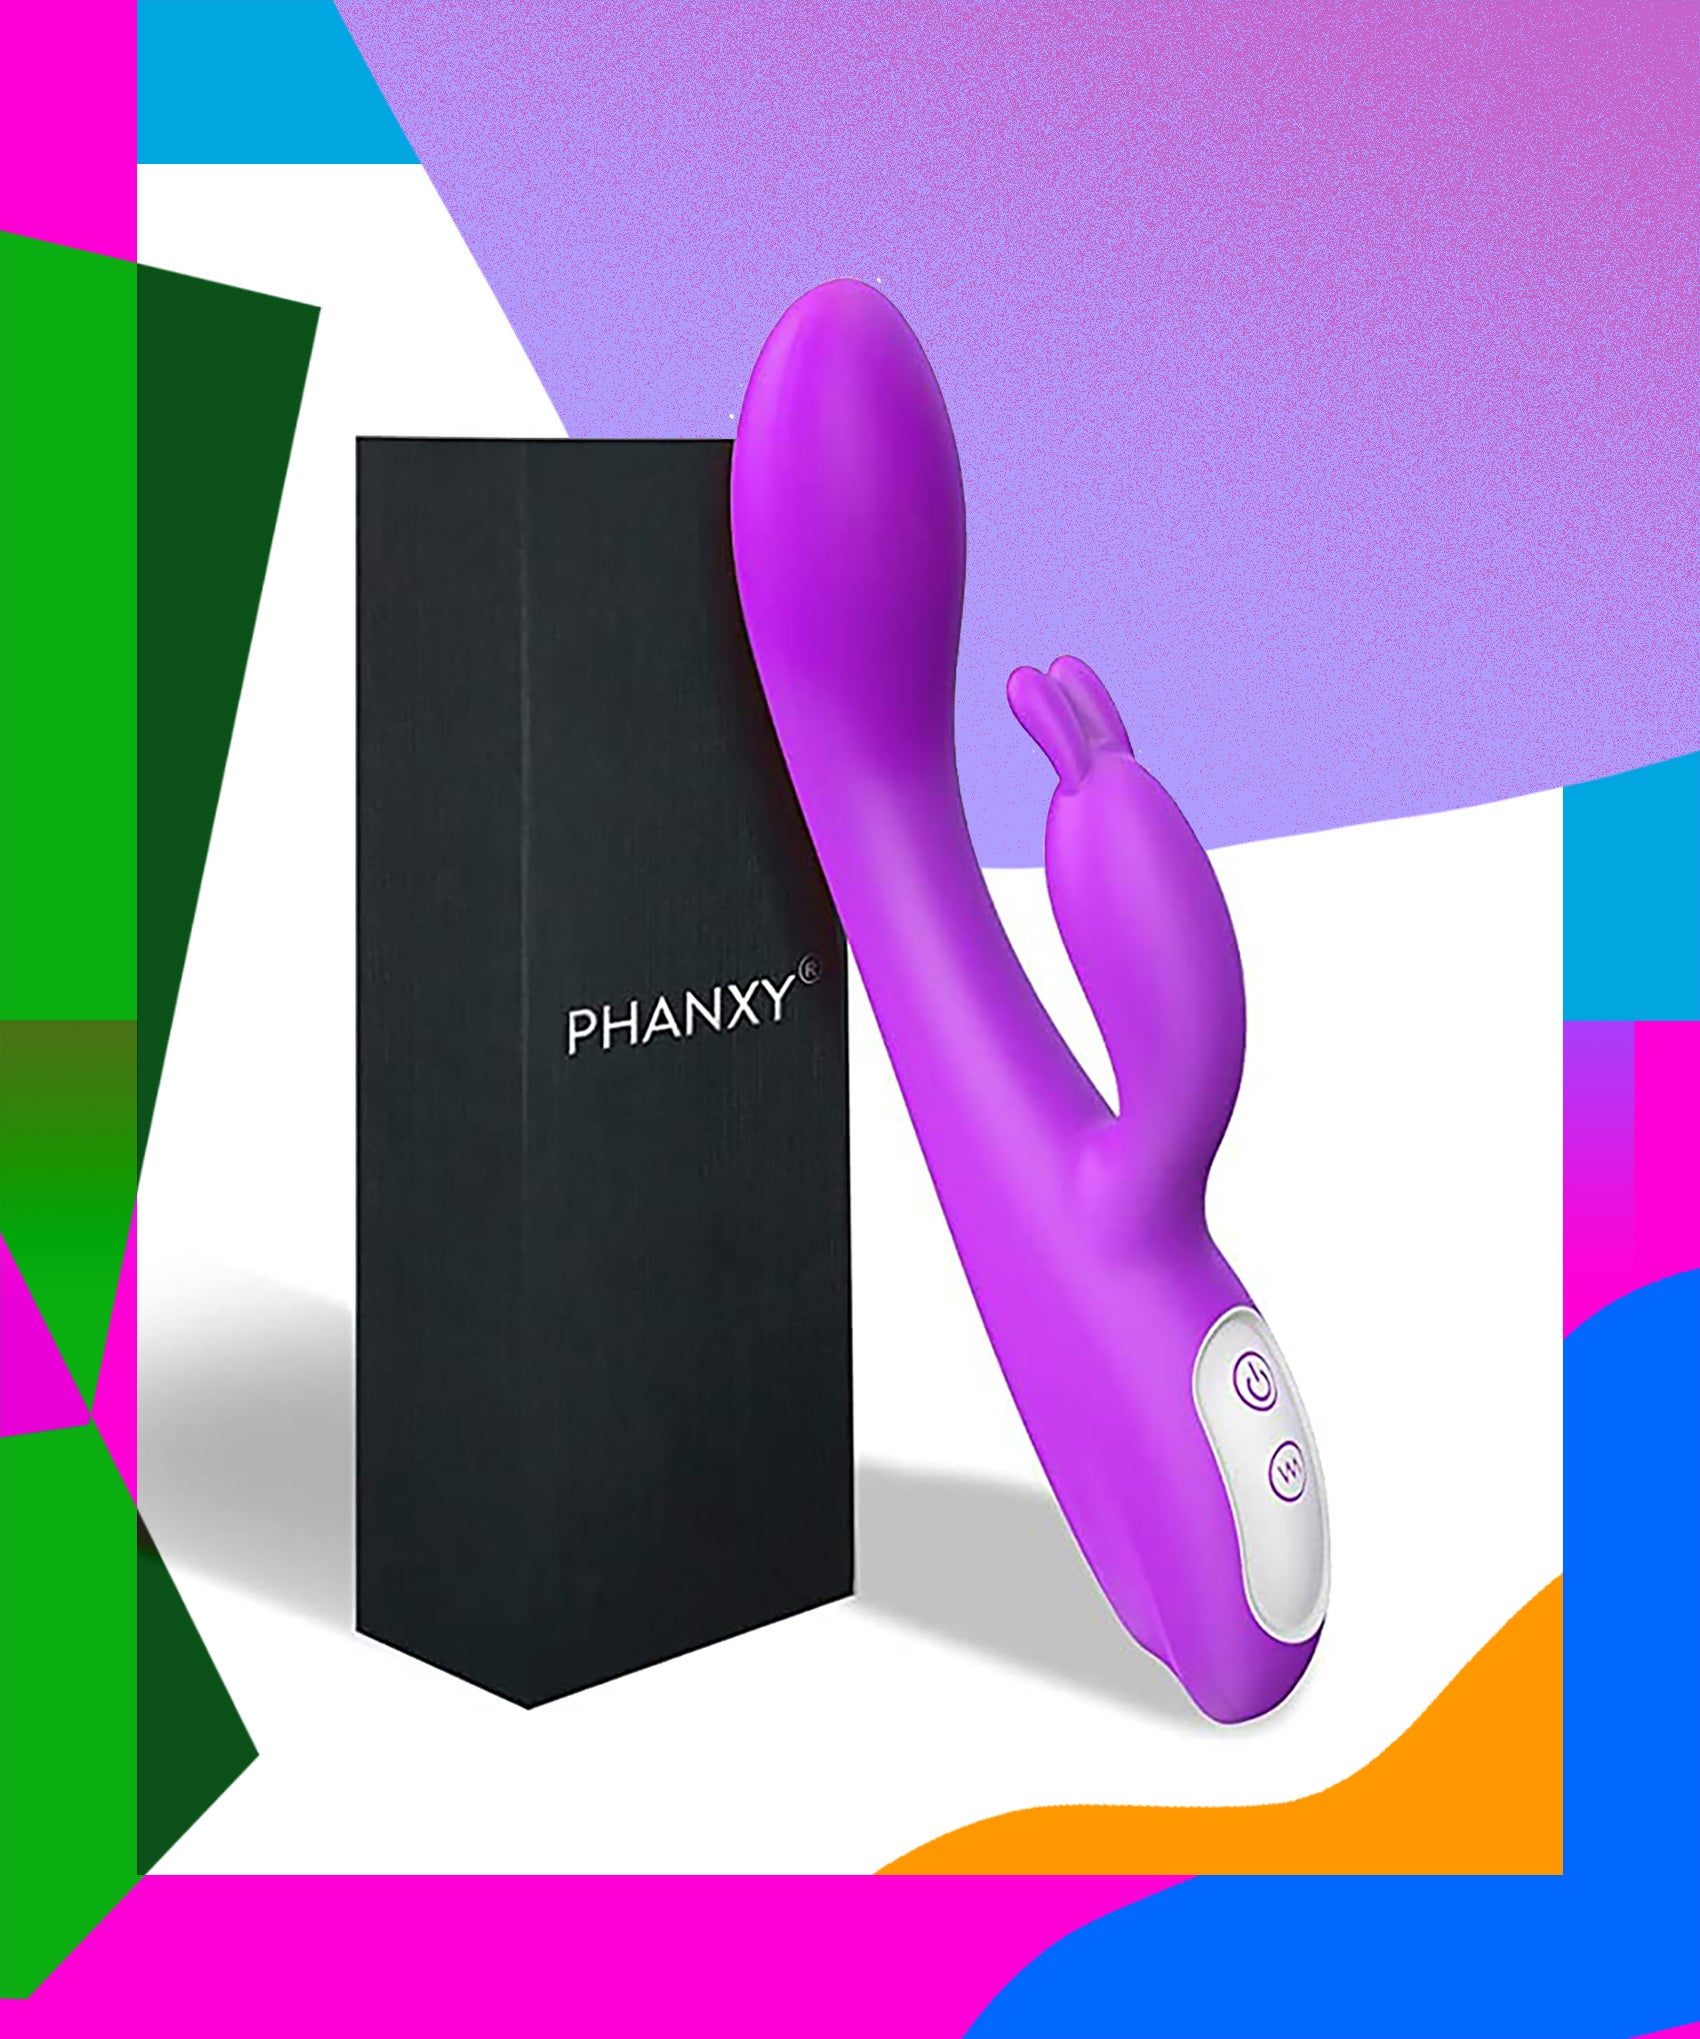 Best Rabbit Vibrators Sex Toys For Women Reviews 2022 pic